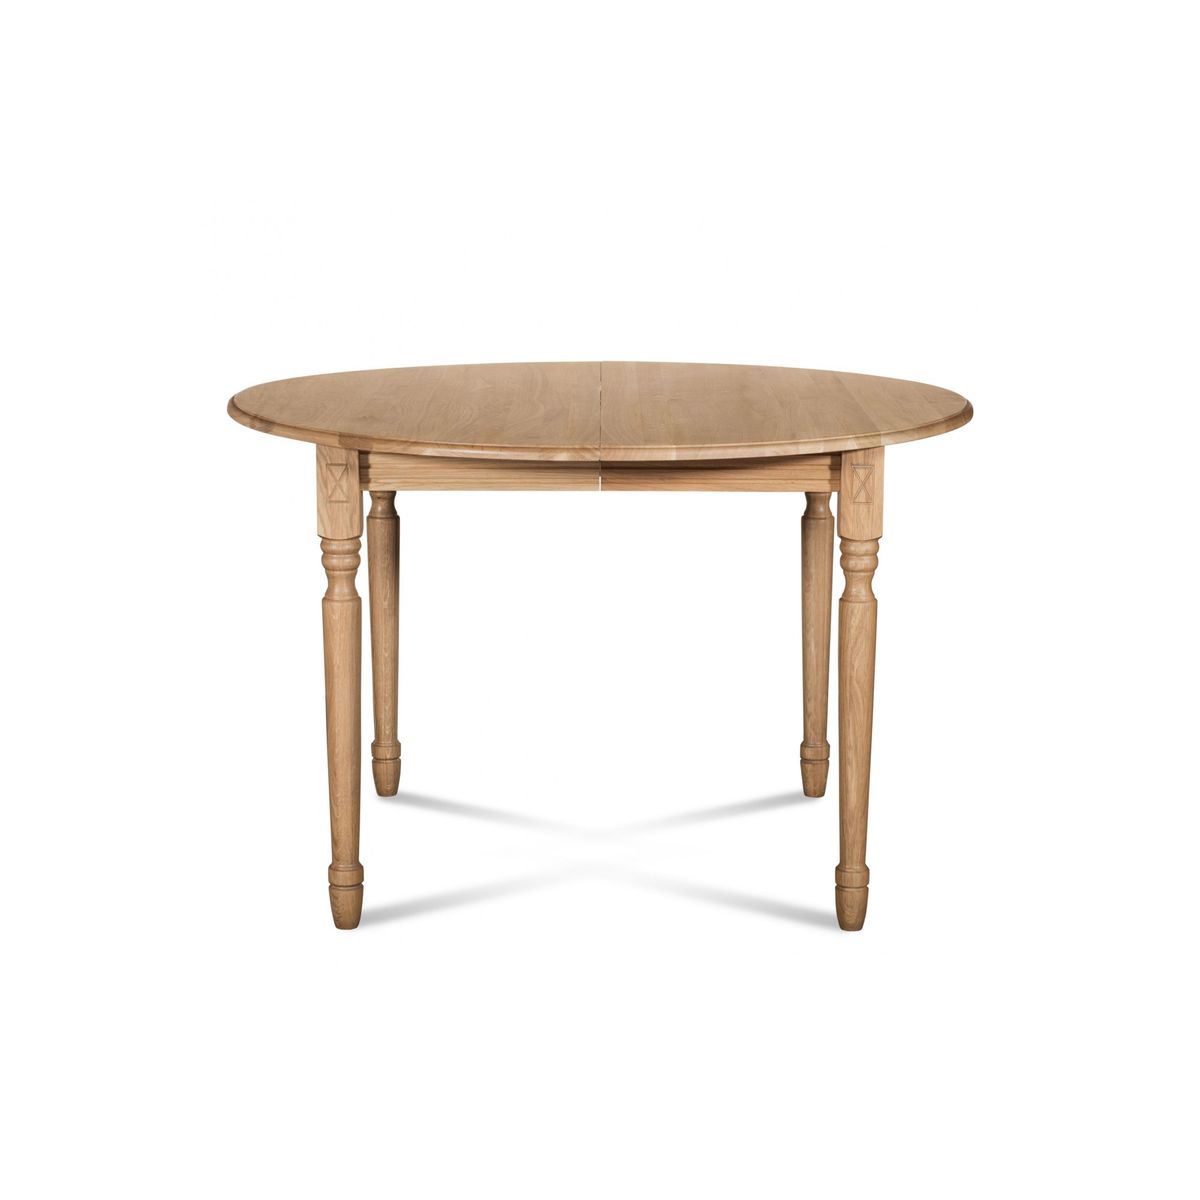 Table extensible ronde bois à rallonges - 105 cm - Pieds tournés - VICTORIA